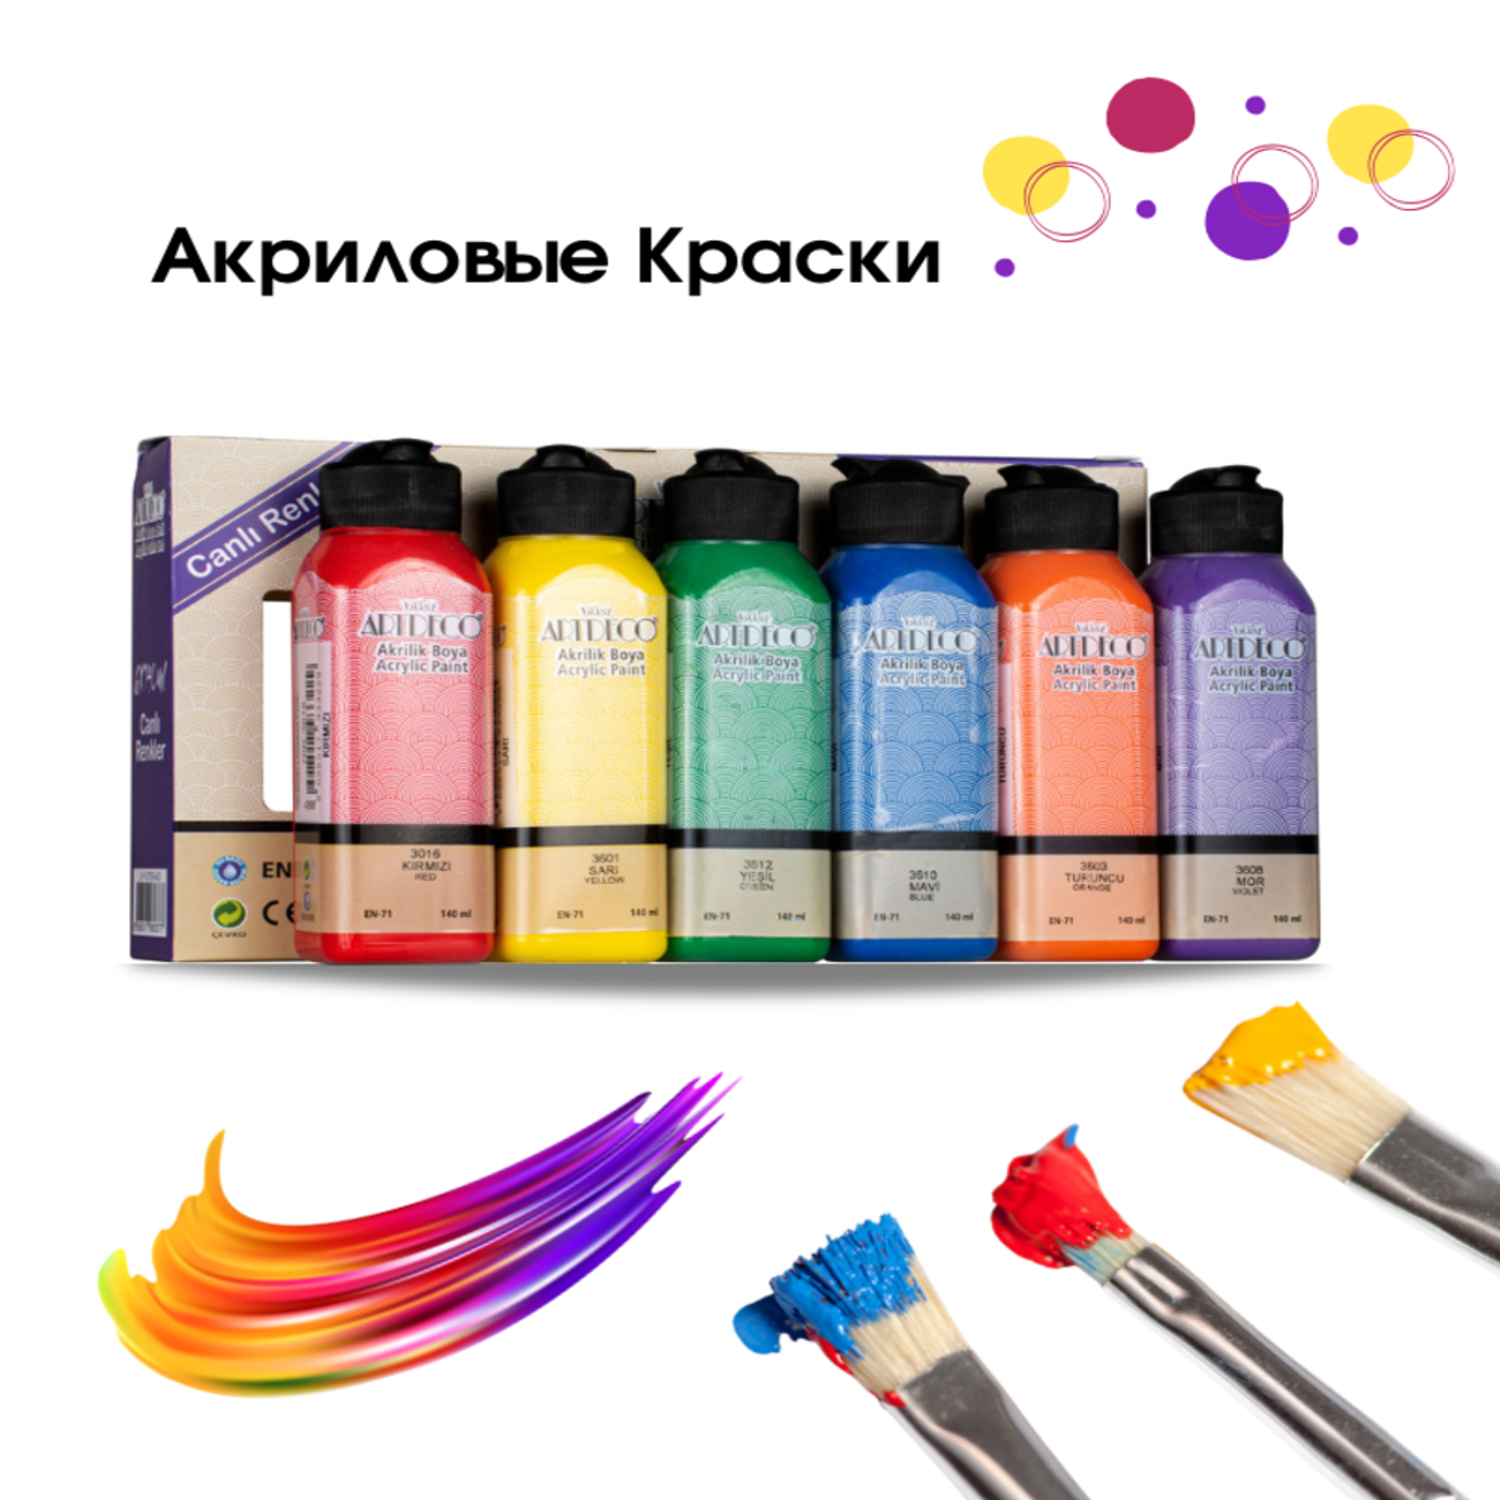 Краски акриловые ARTDECO 6 цветов по 140 мл для начинающих и опытных художников - фото 9